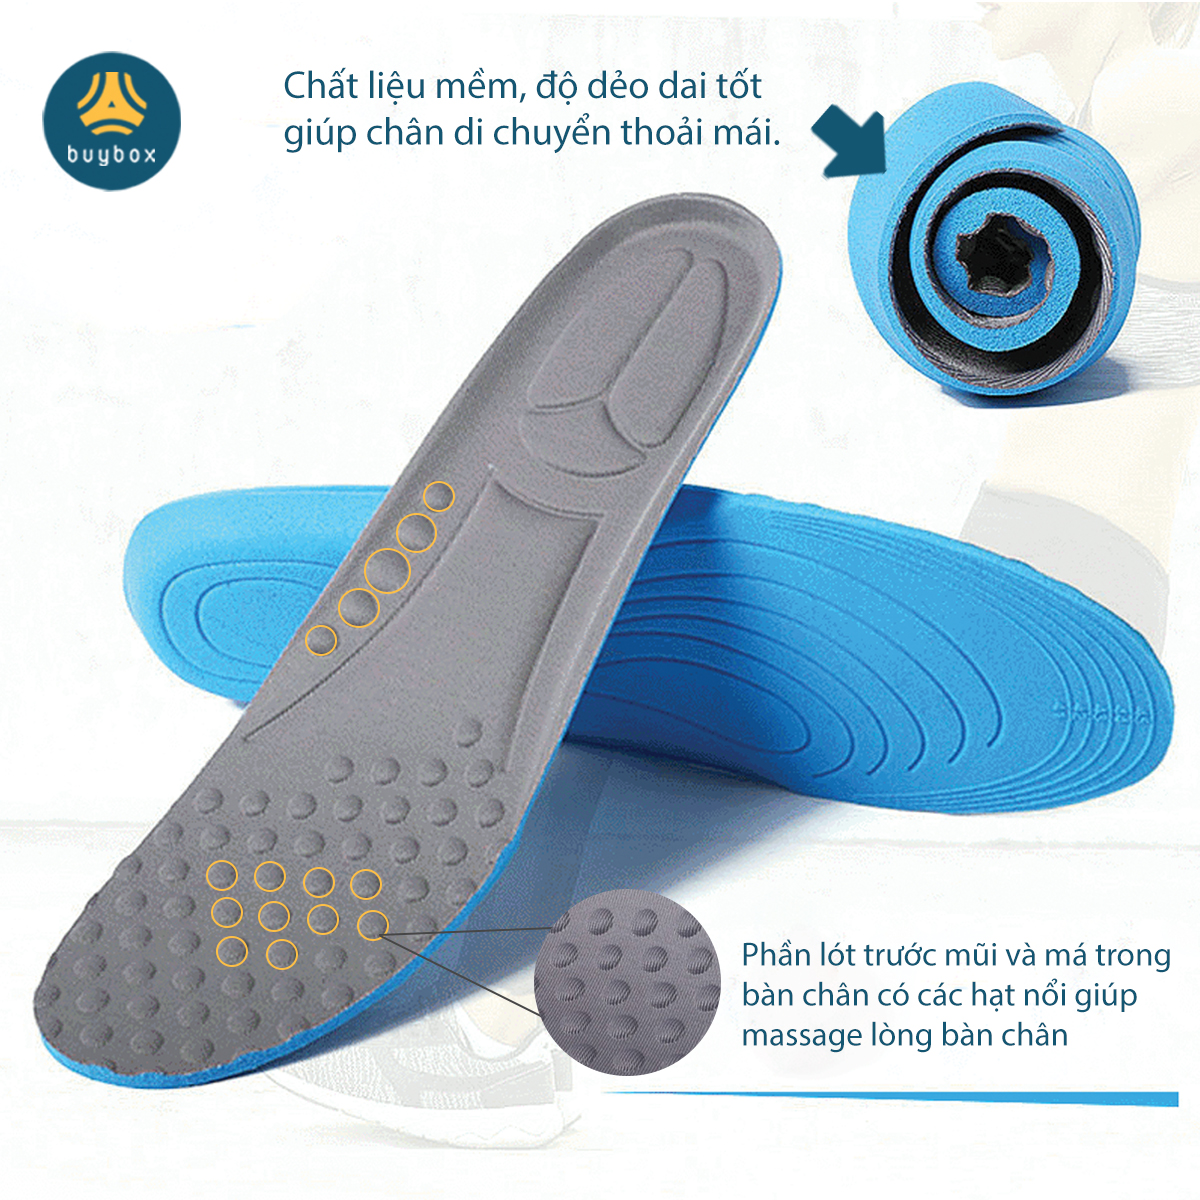 Lót giày thể thao có hạt massage lòng bàn chân, thoáng khí, chất liệu mềm mại dễ dàng vận động - Buybox - BBPK228